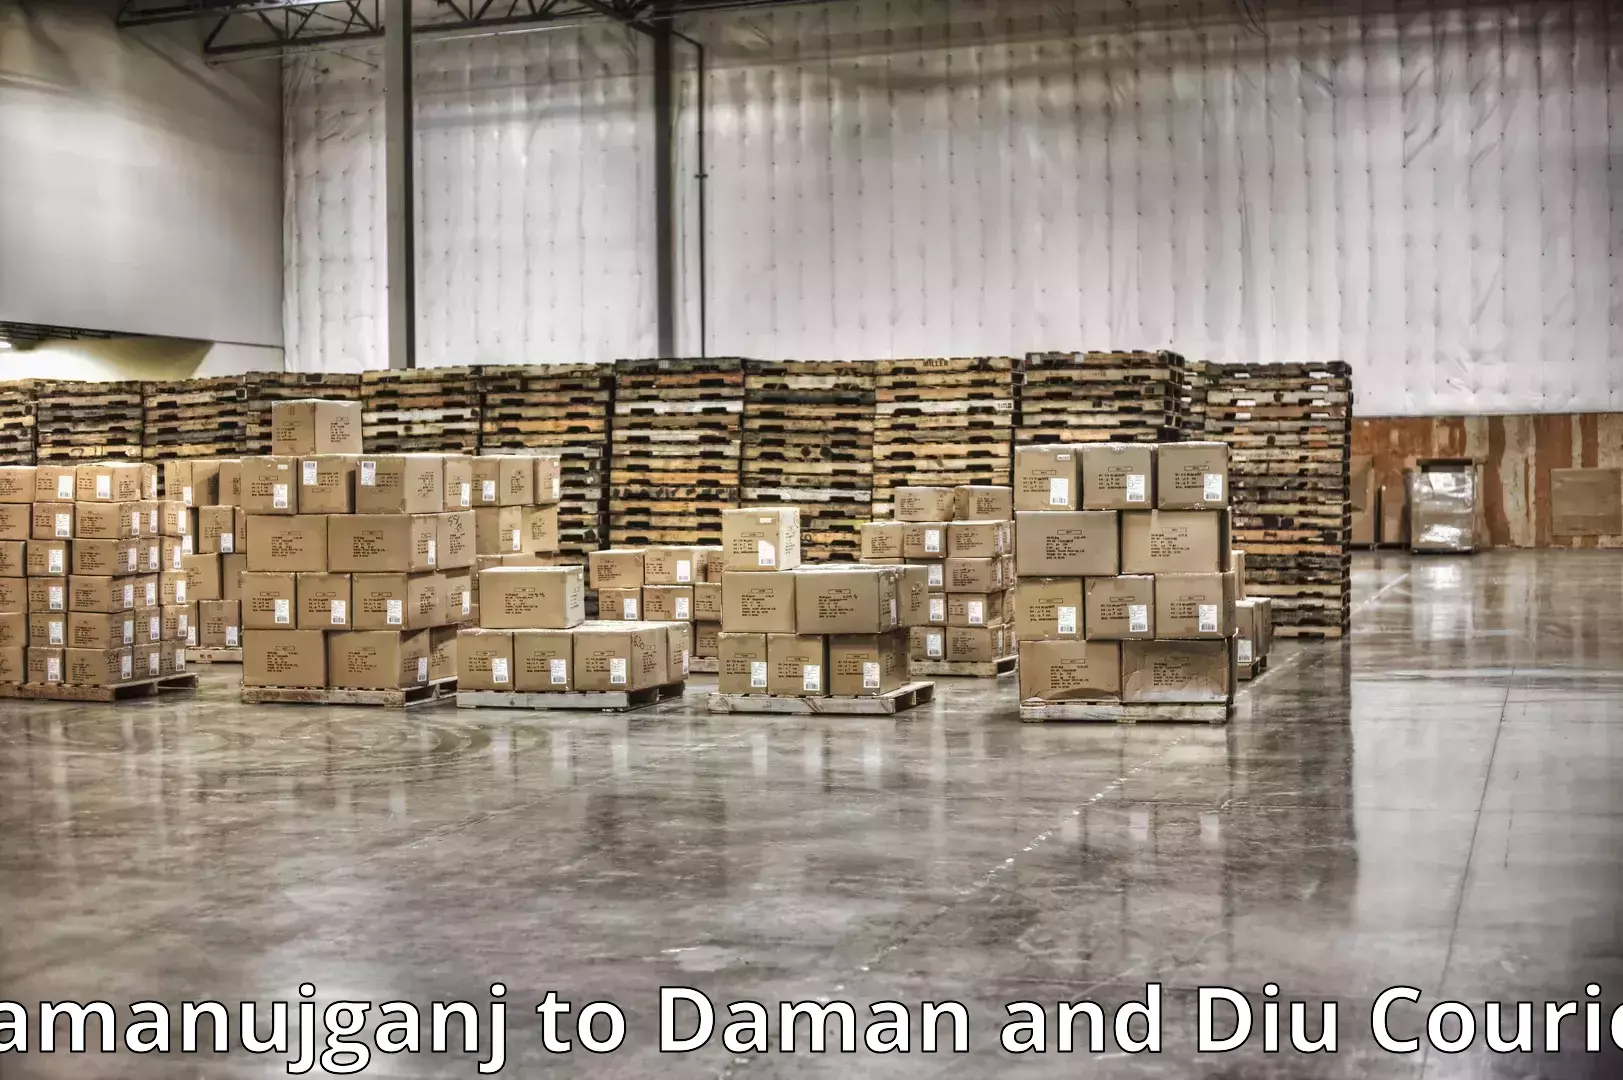 Professional packing and transport Ramanujganj to Daman and Diu